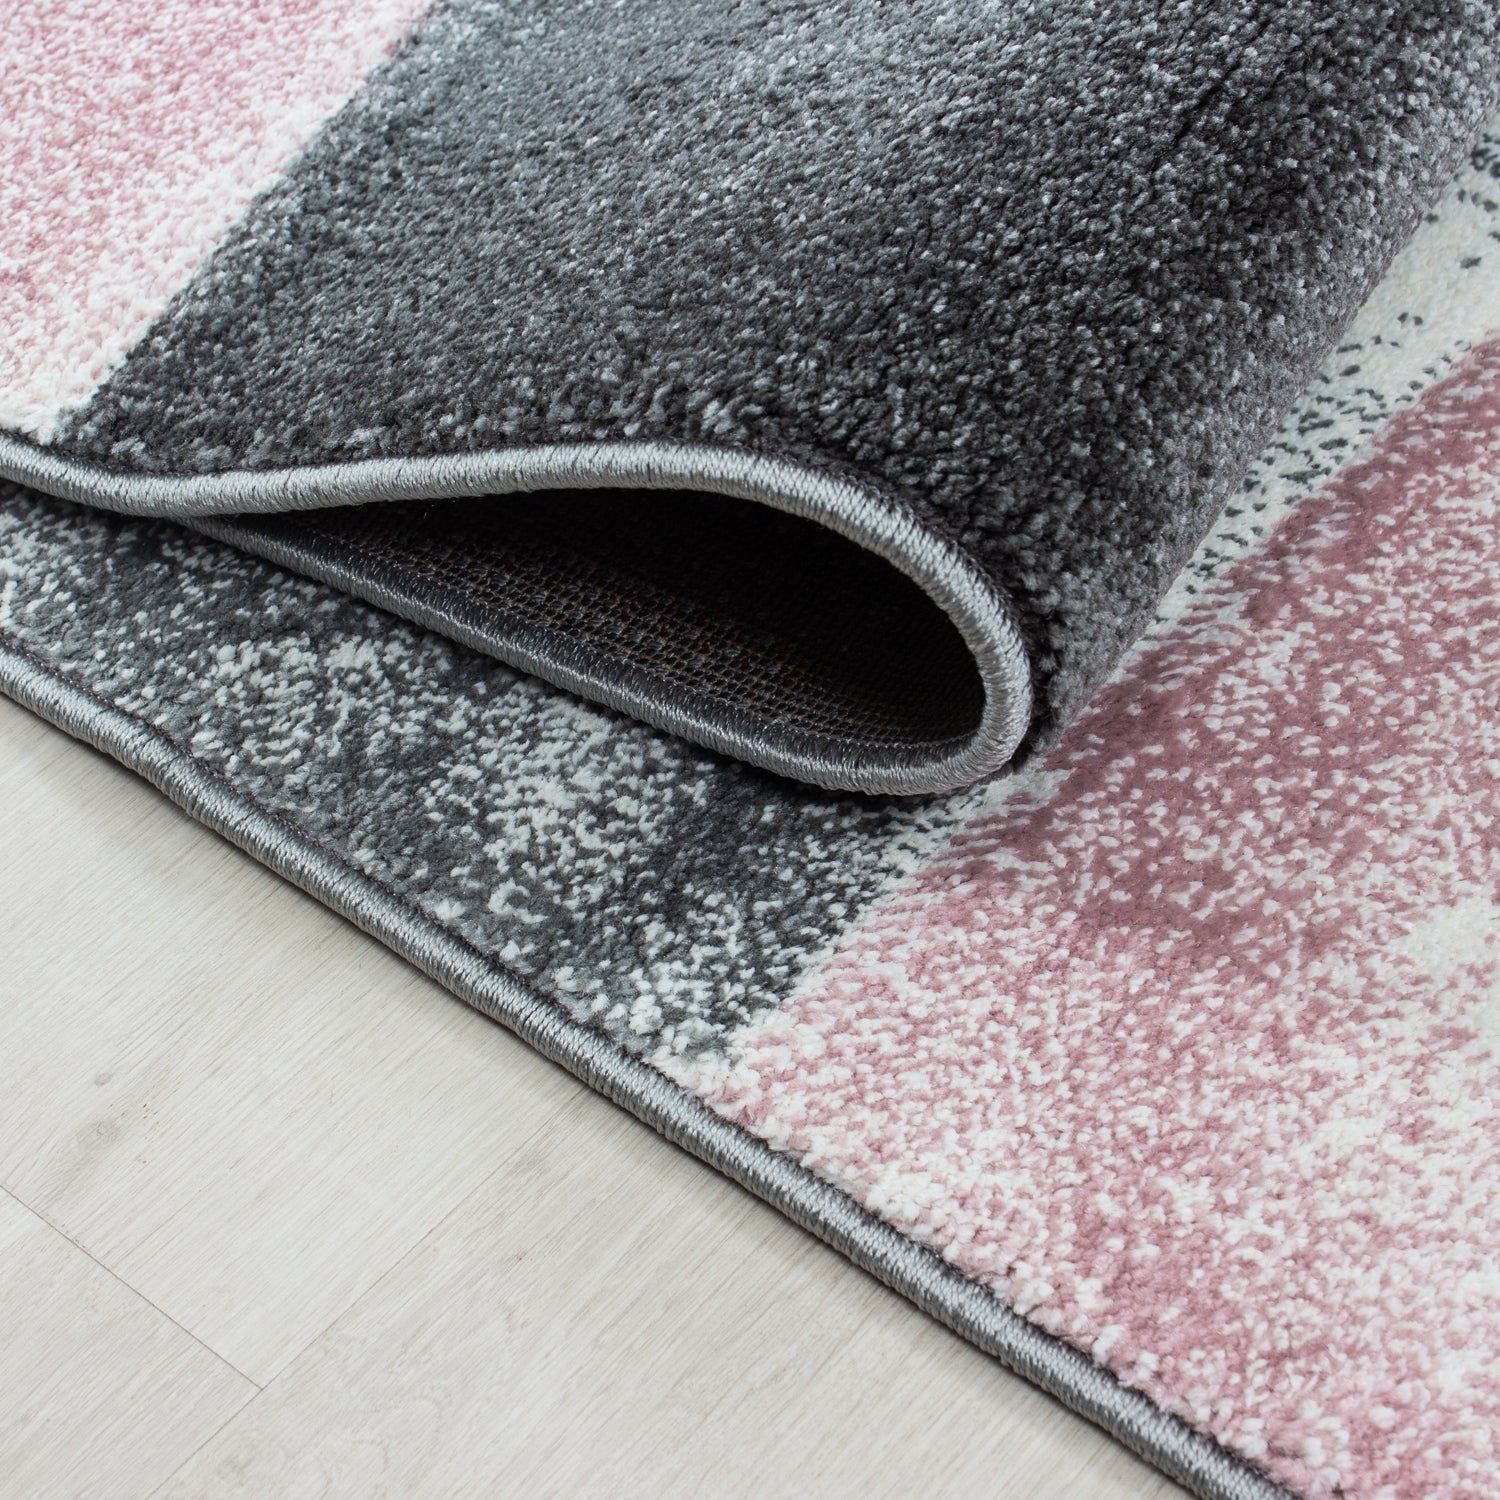 Kurzflor Design Teppich Rechteck Karo Muster Wohnzimmerteppich Rosa Weiß Meliert